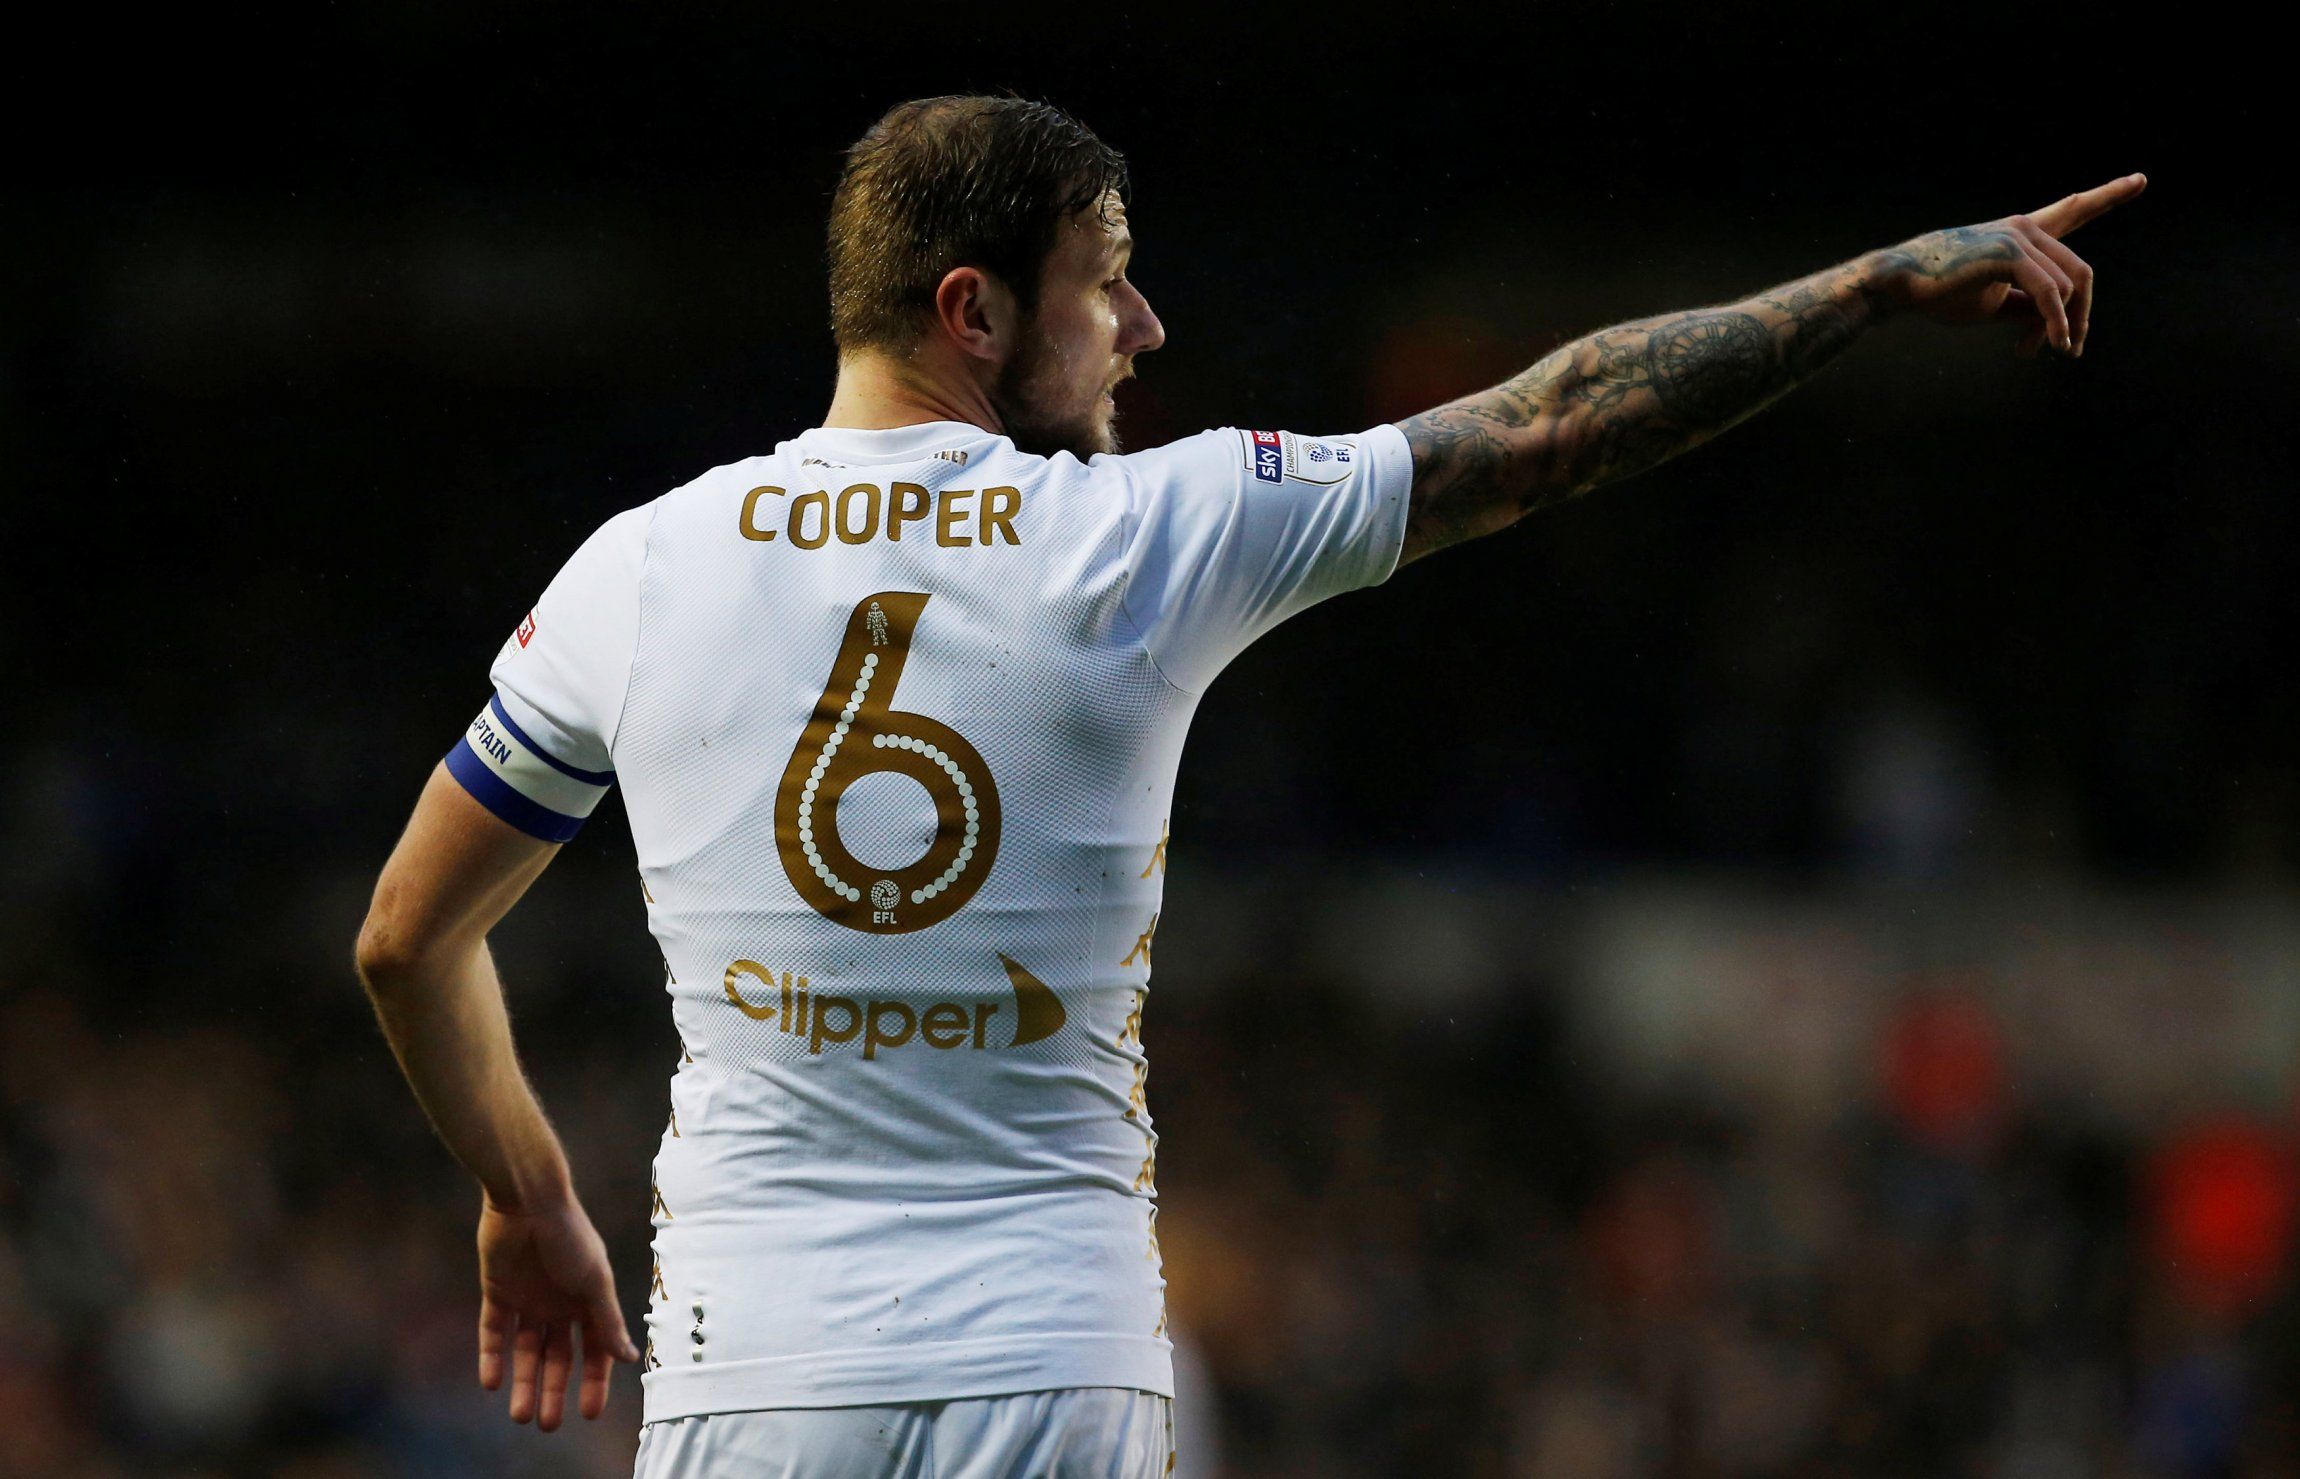 Liam Cooper captaining Leeds United